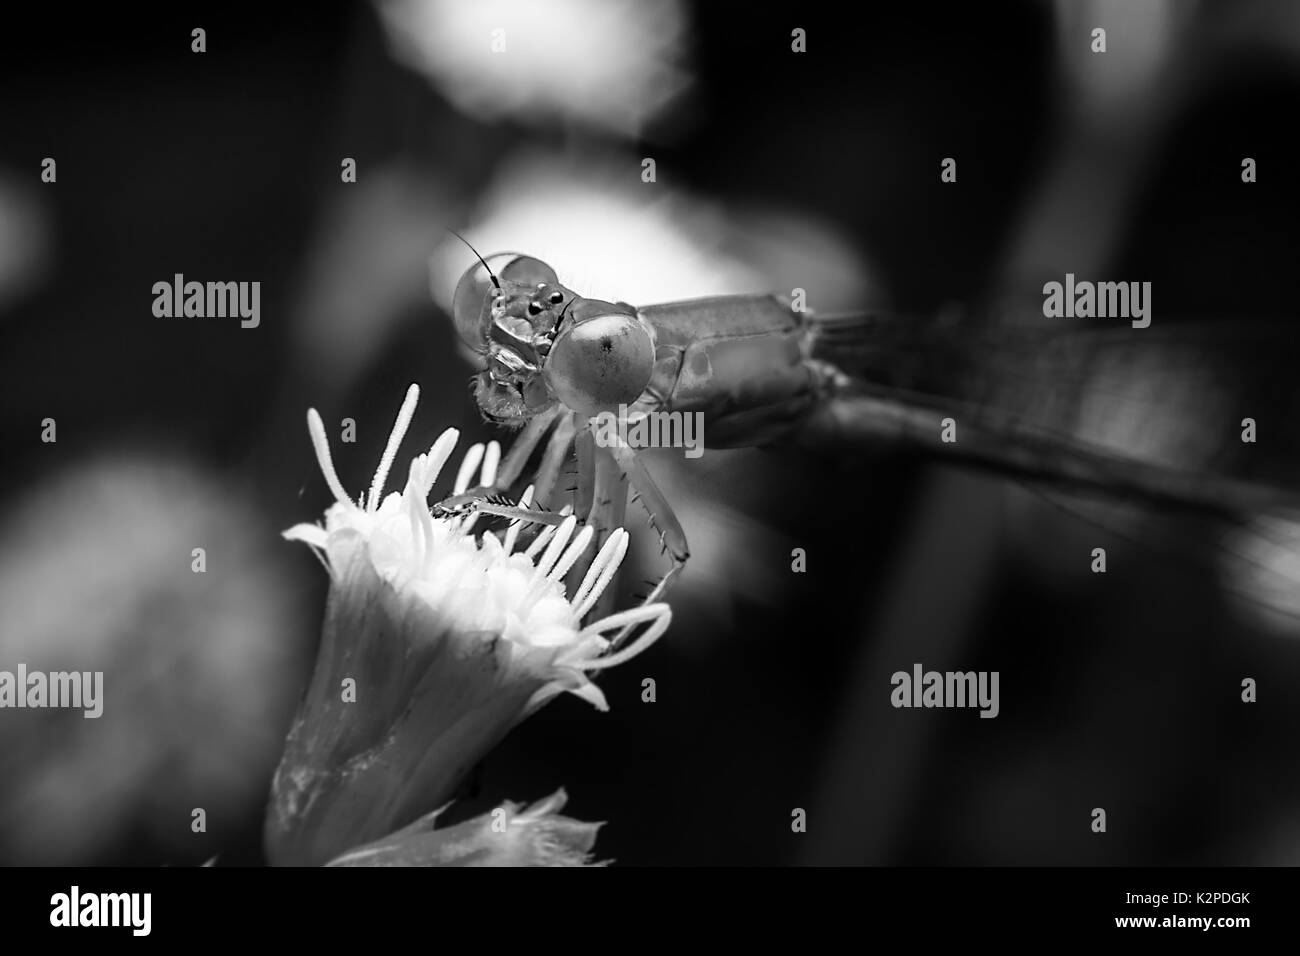 Libelle mit close-up detaillierte Ansicht Stockfoto